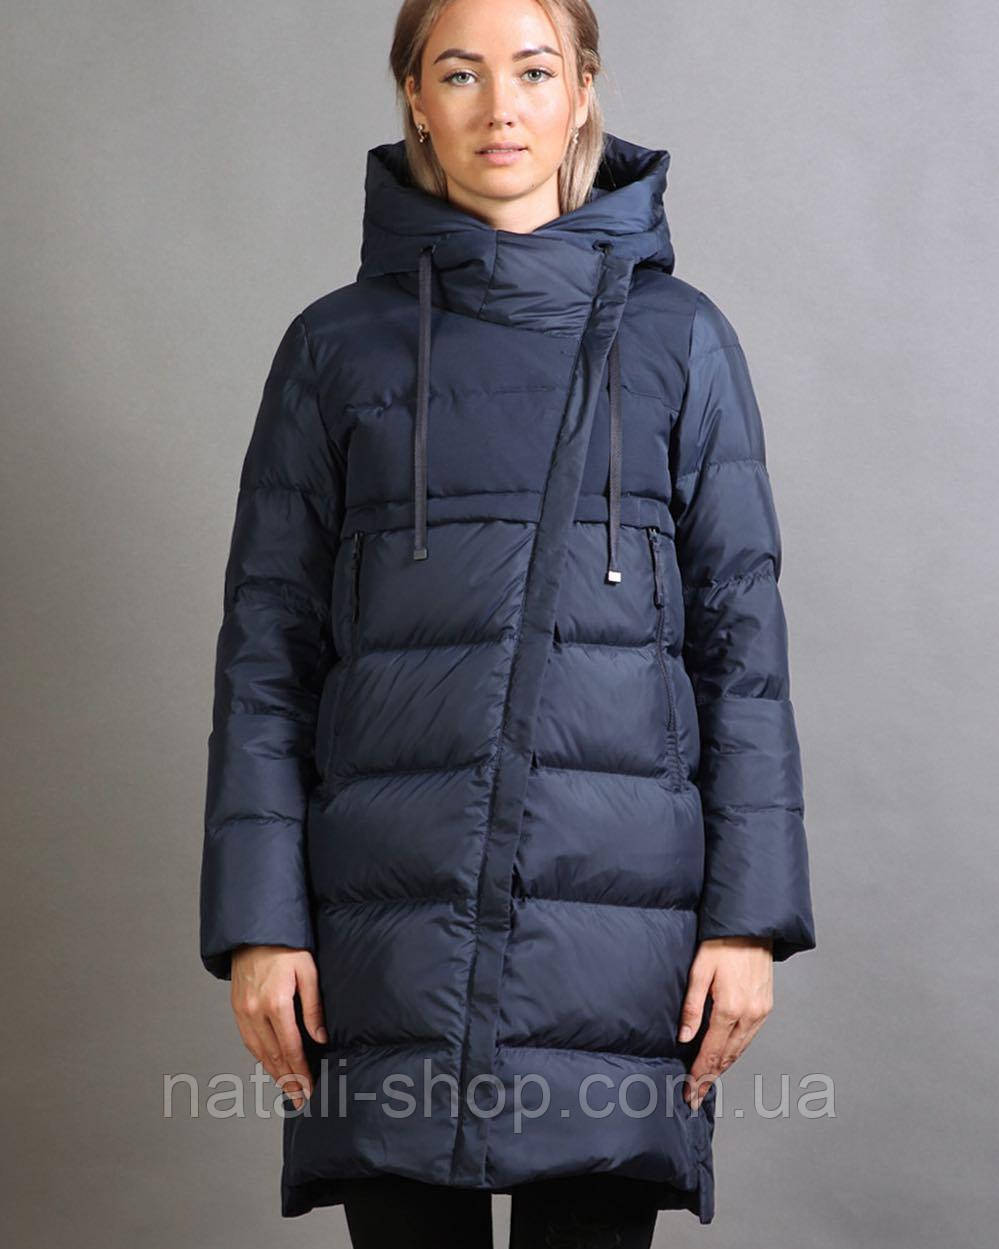 Жіноча зимова куртка пуховик SNOWIMAGE SID-S503 XL, XXL